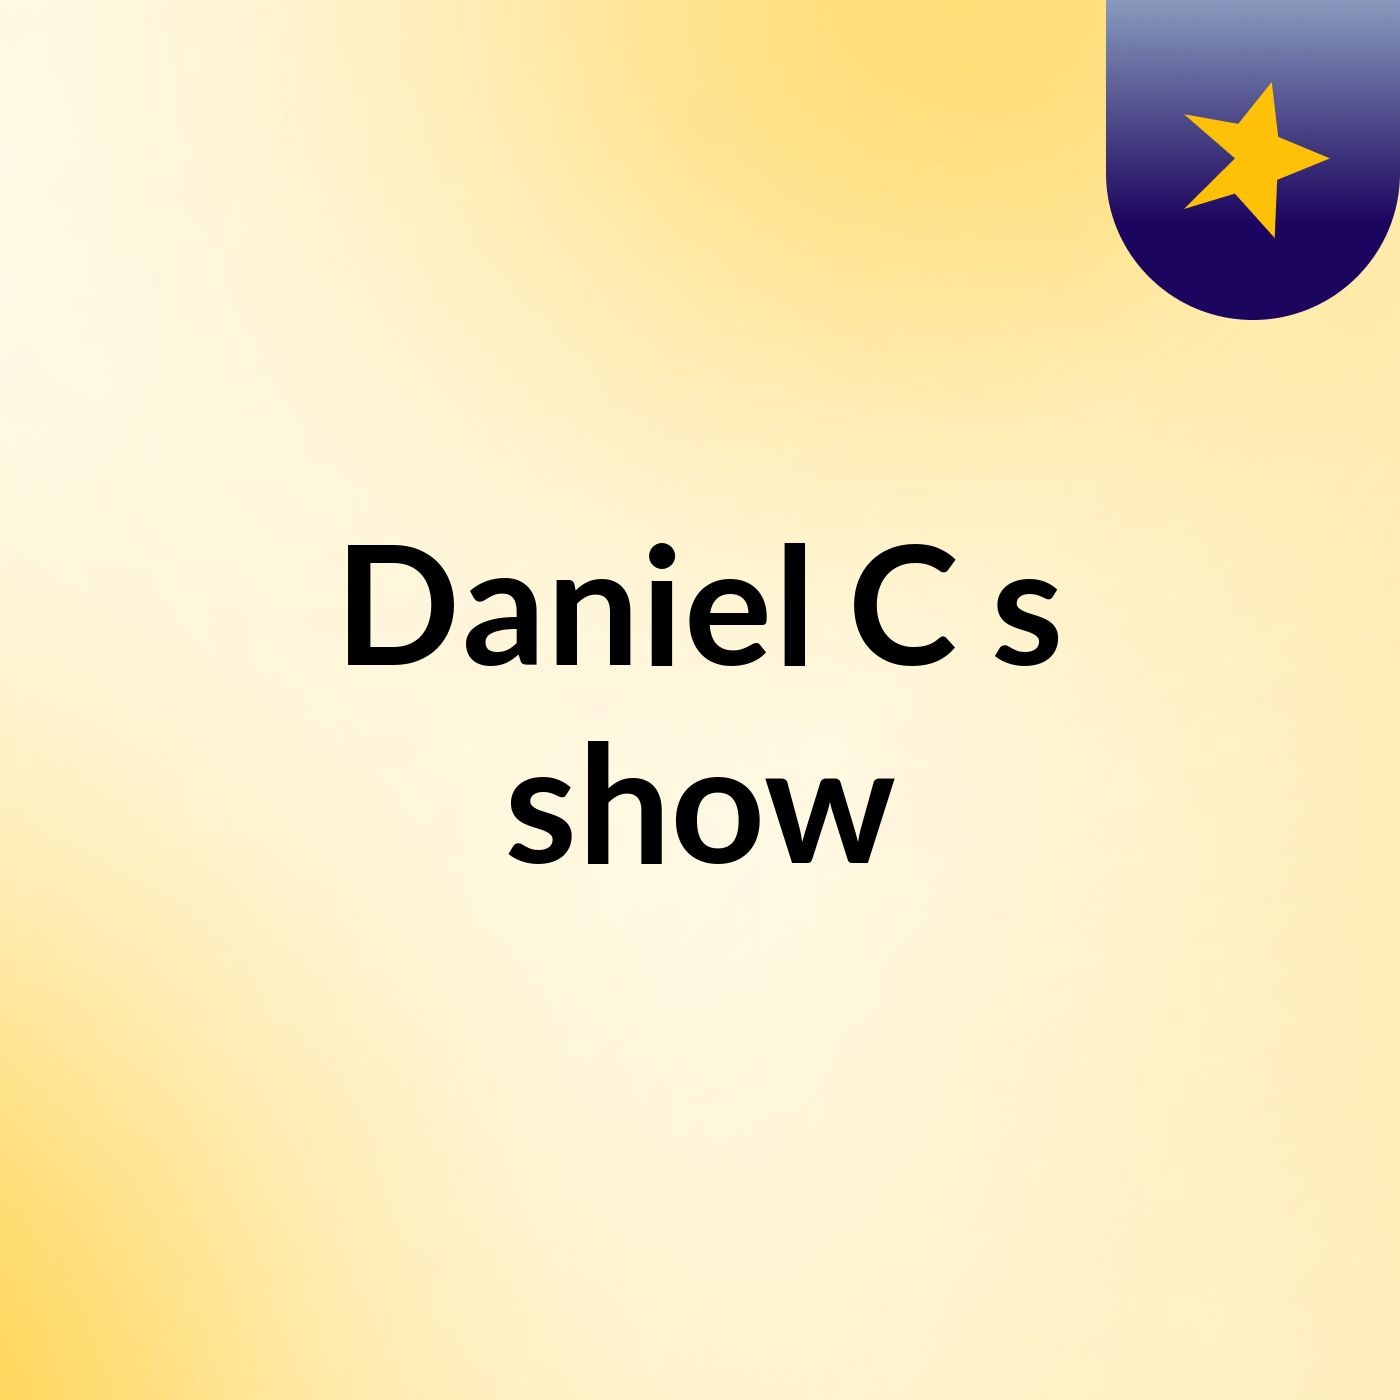 Daniel C's show